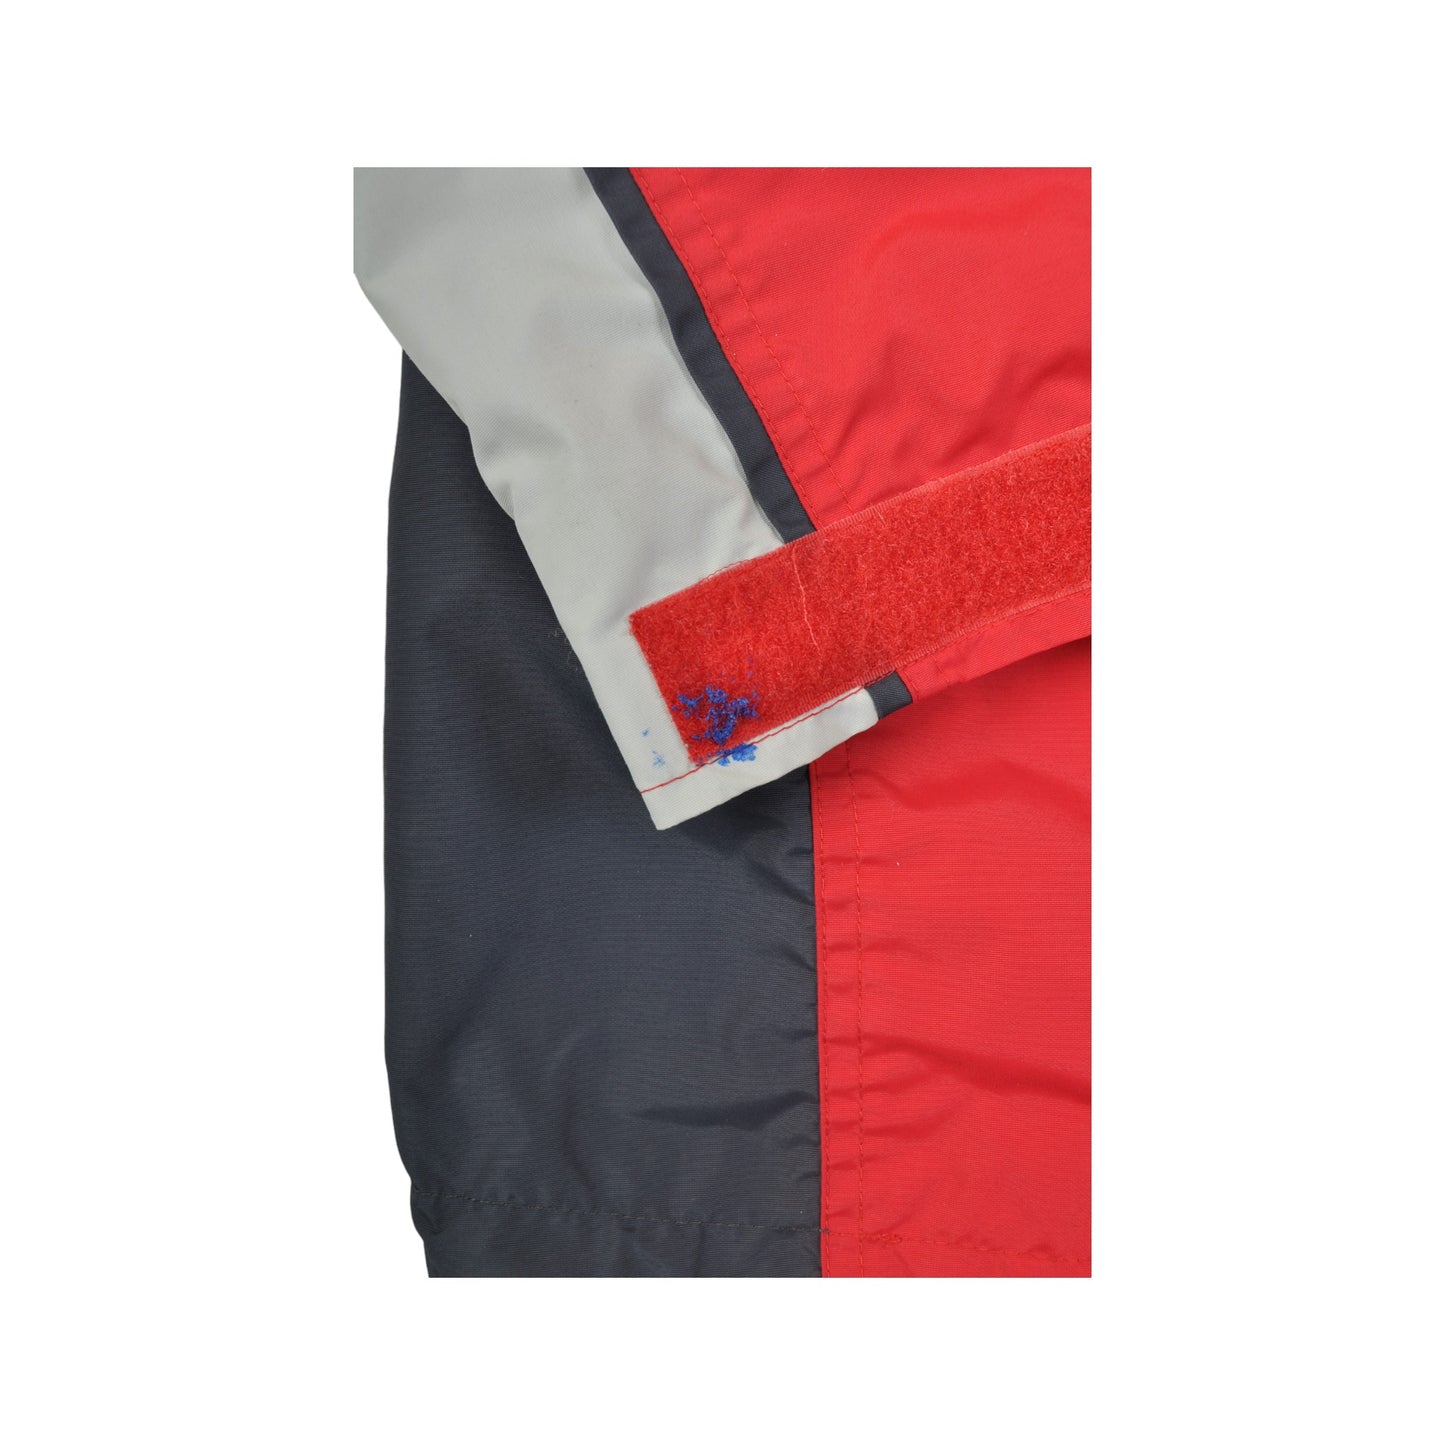 Vintage Columbia Jacket Waterproof Red/Navy Ladies Medium